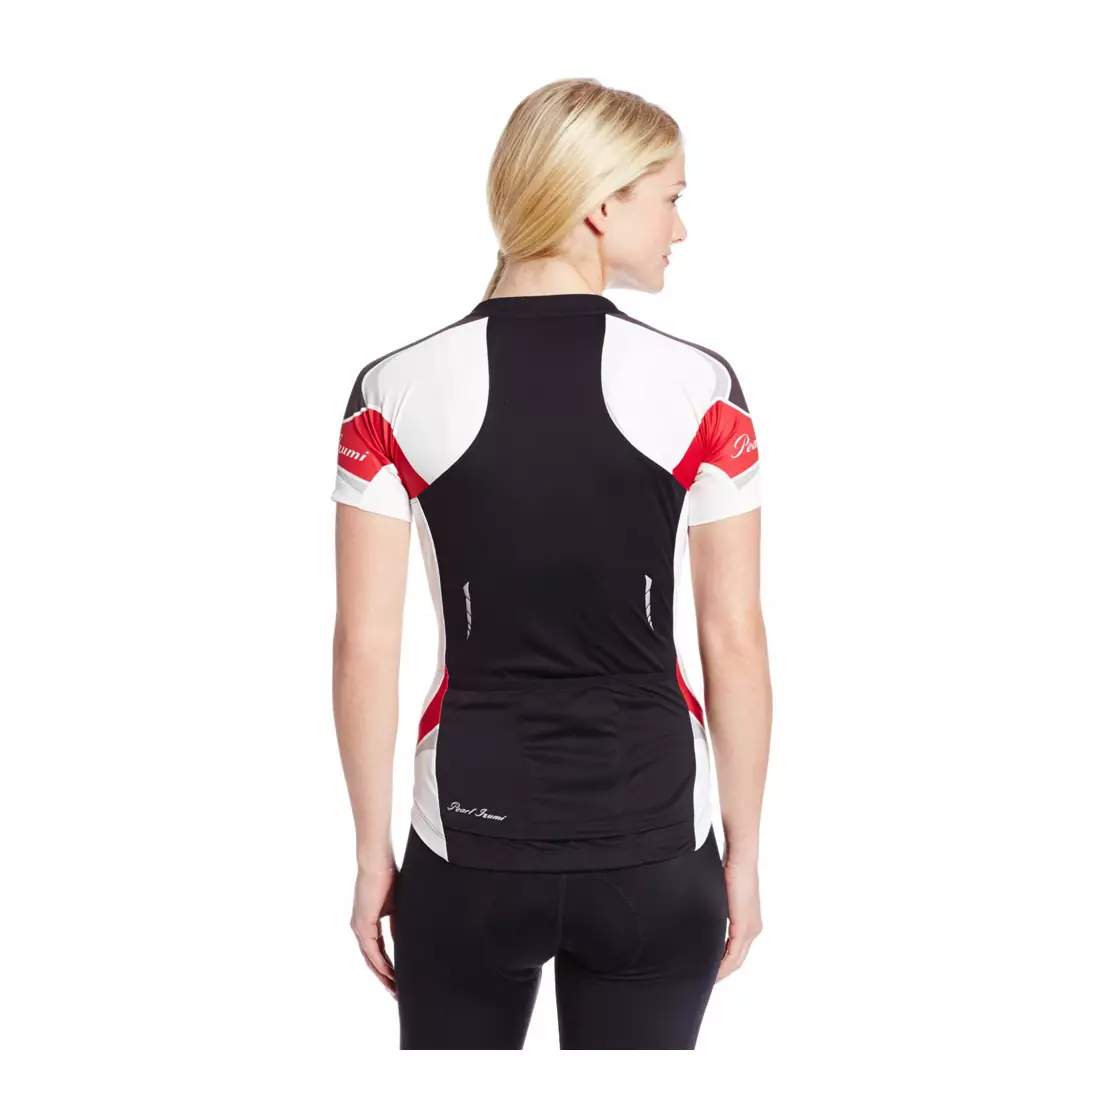 PEARL IZUMI - 11221301-4DK ELITE - dámsky cyklistický dres, farba: Čierno-červená